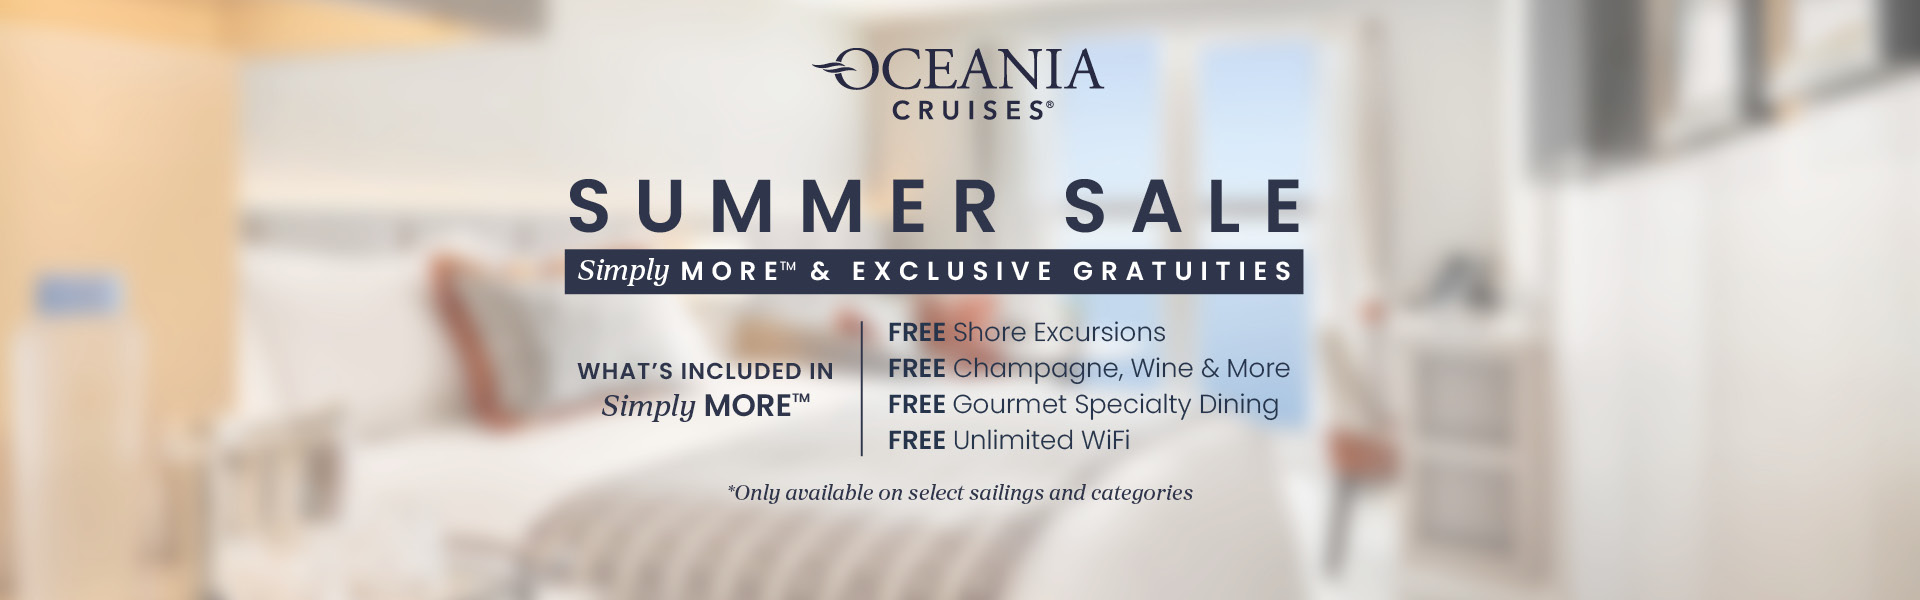 Oceania Cruises Sale